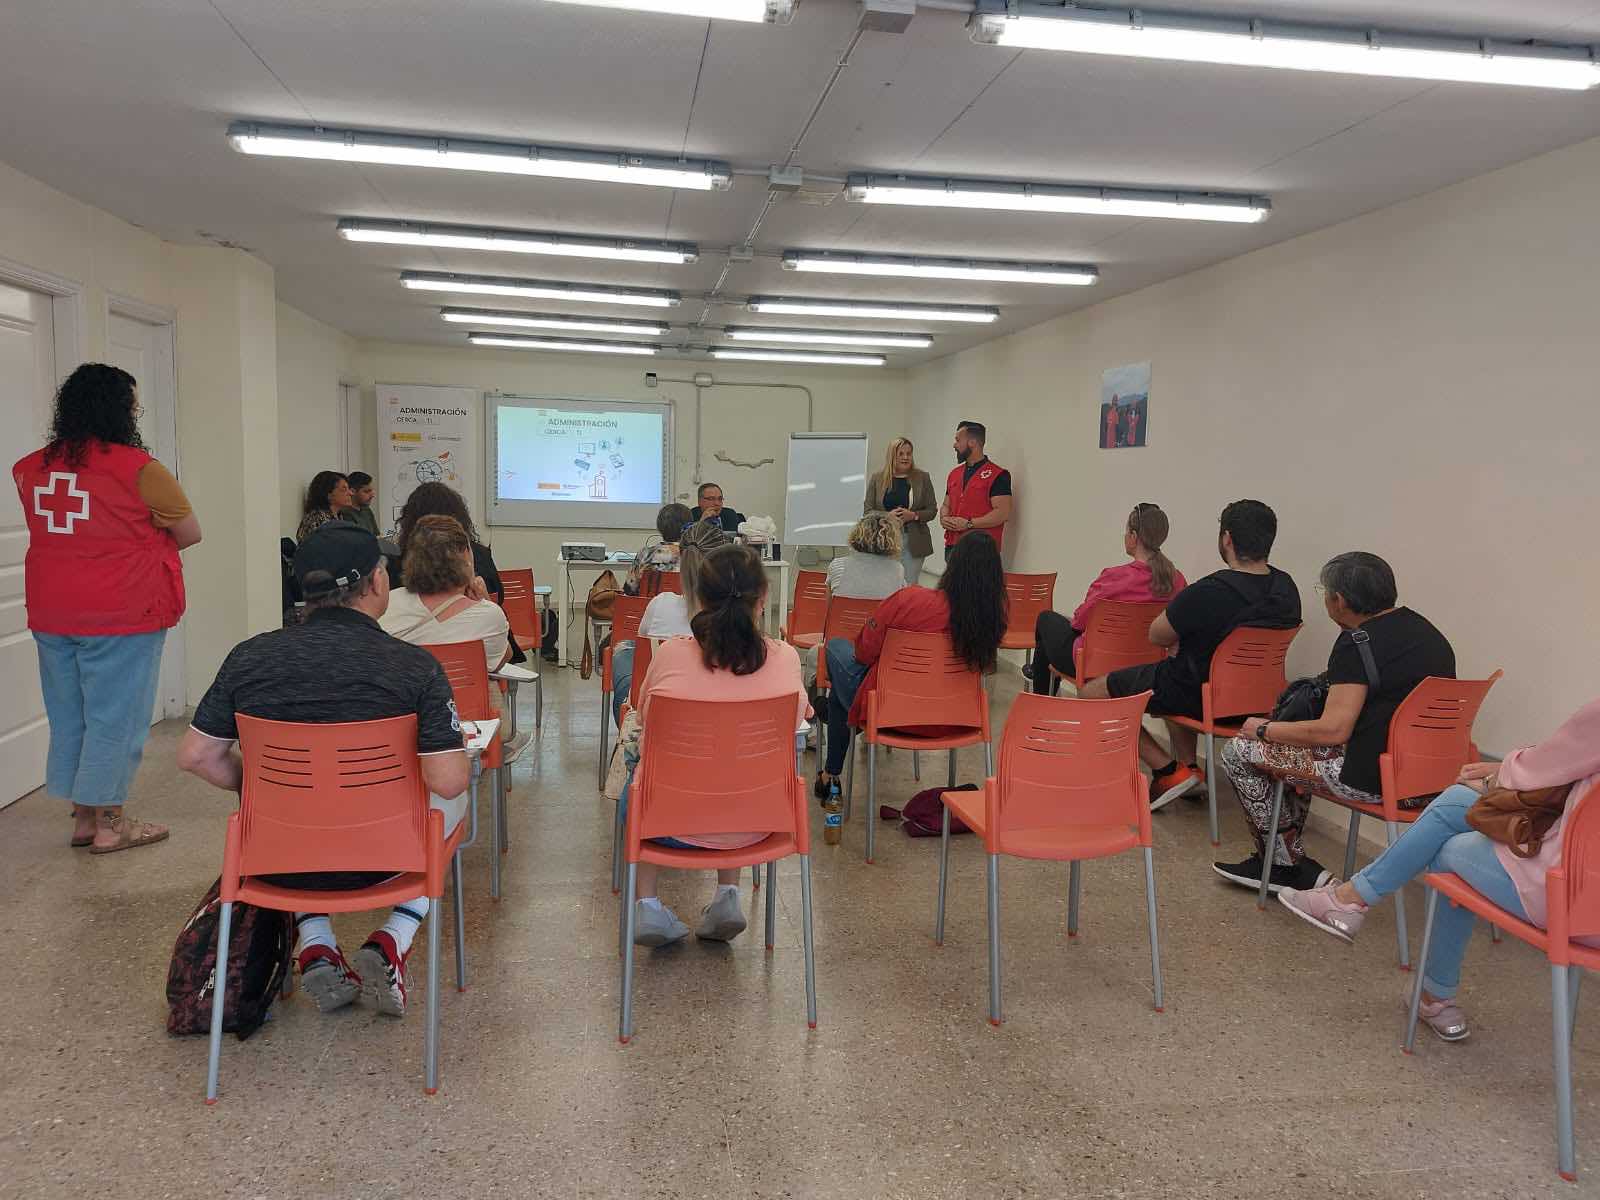 Cruz Roja contribuye a mejorar la empleabilidad de las familias damnificadas de La Palma, en su compromiso de apoyar la recuperación de la isla